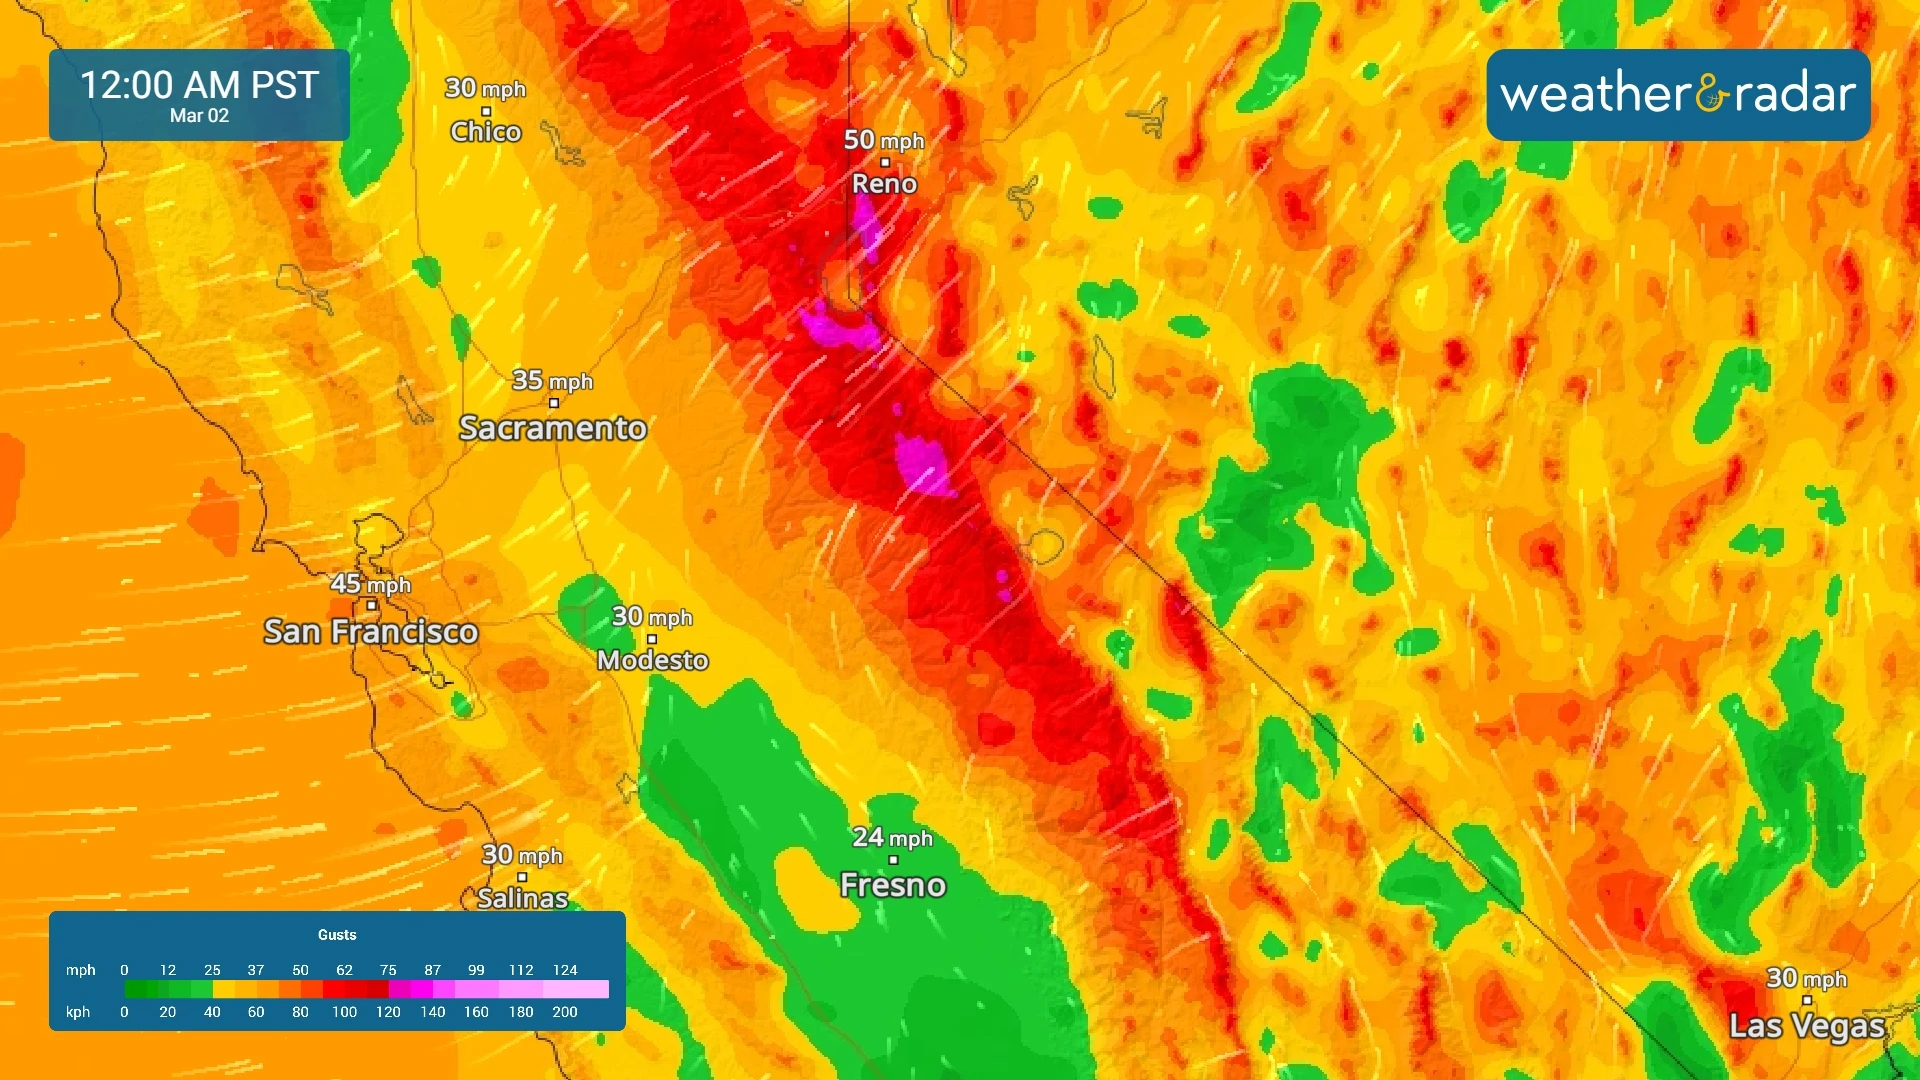 Vientos fuertes también son probables para gran parte del estado de California y Noroeste. 